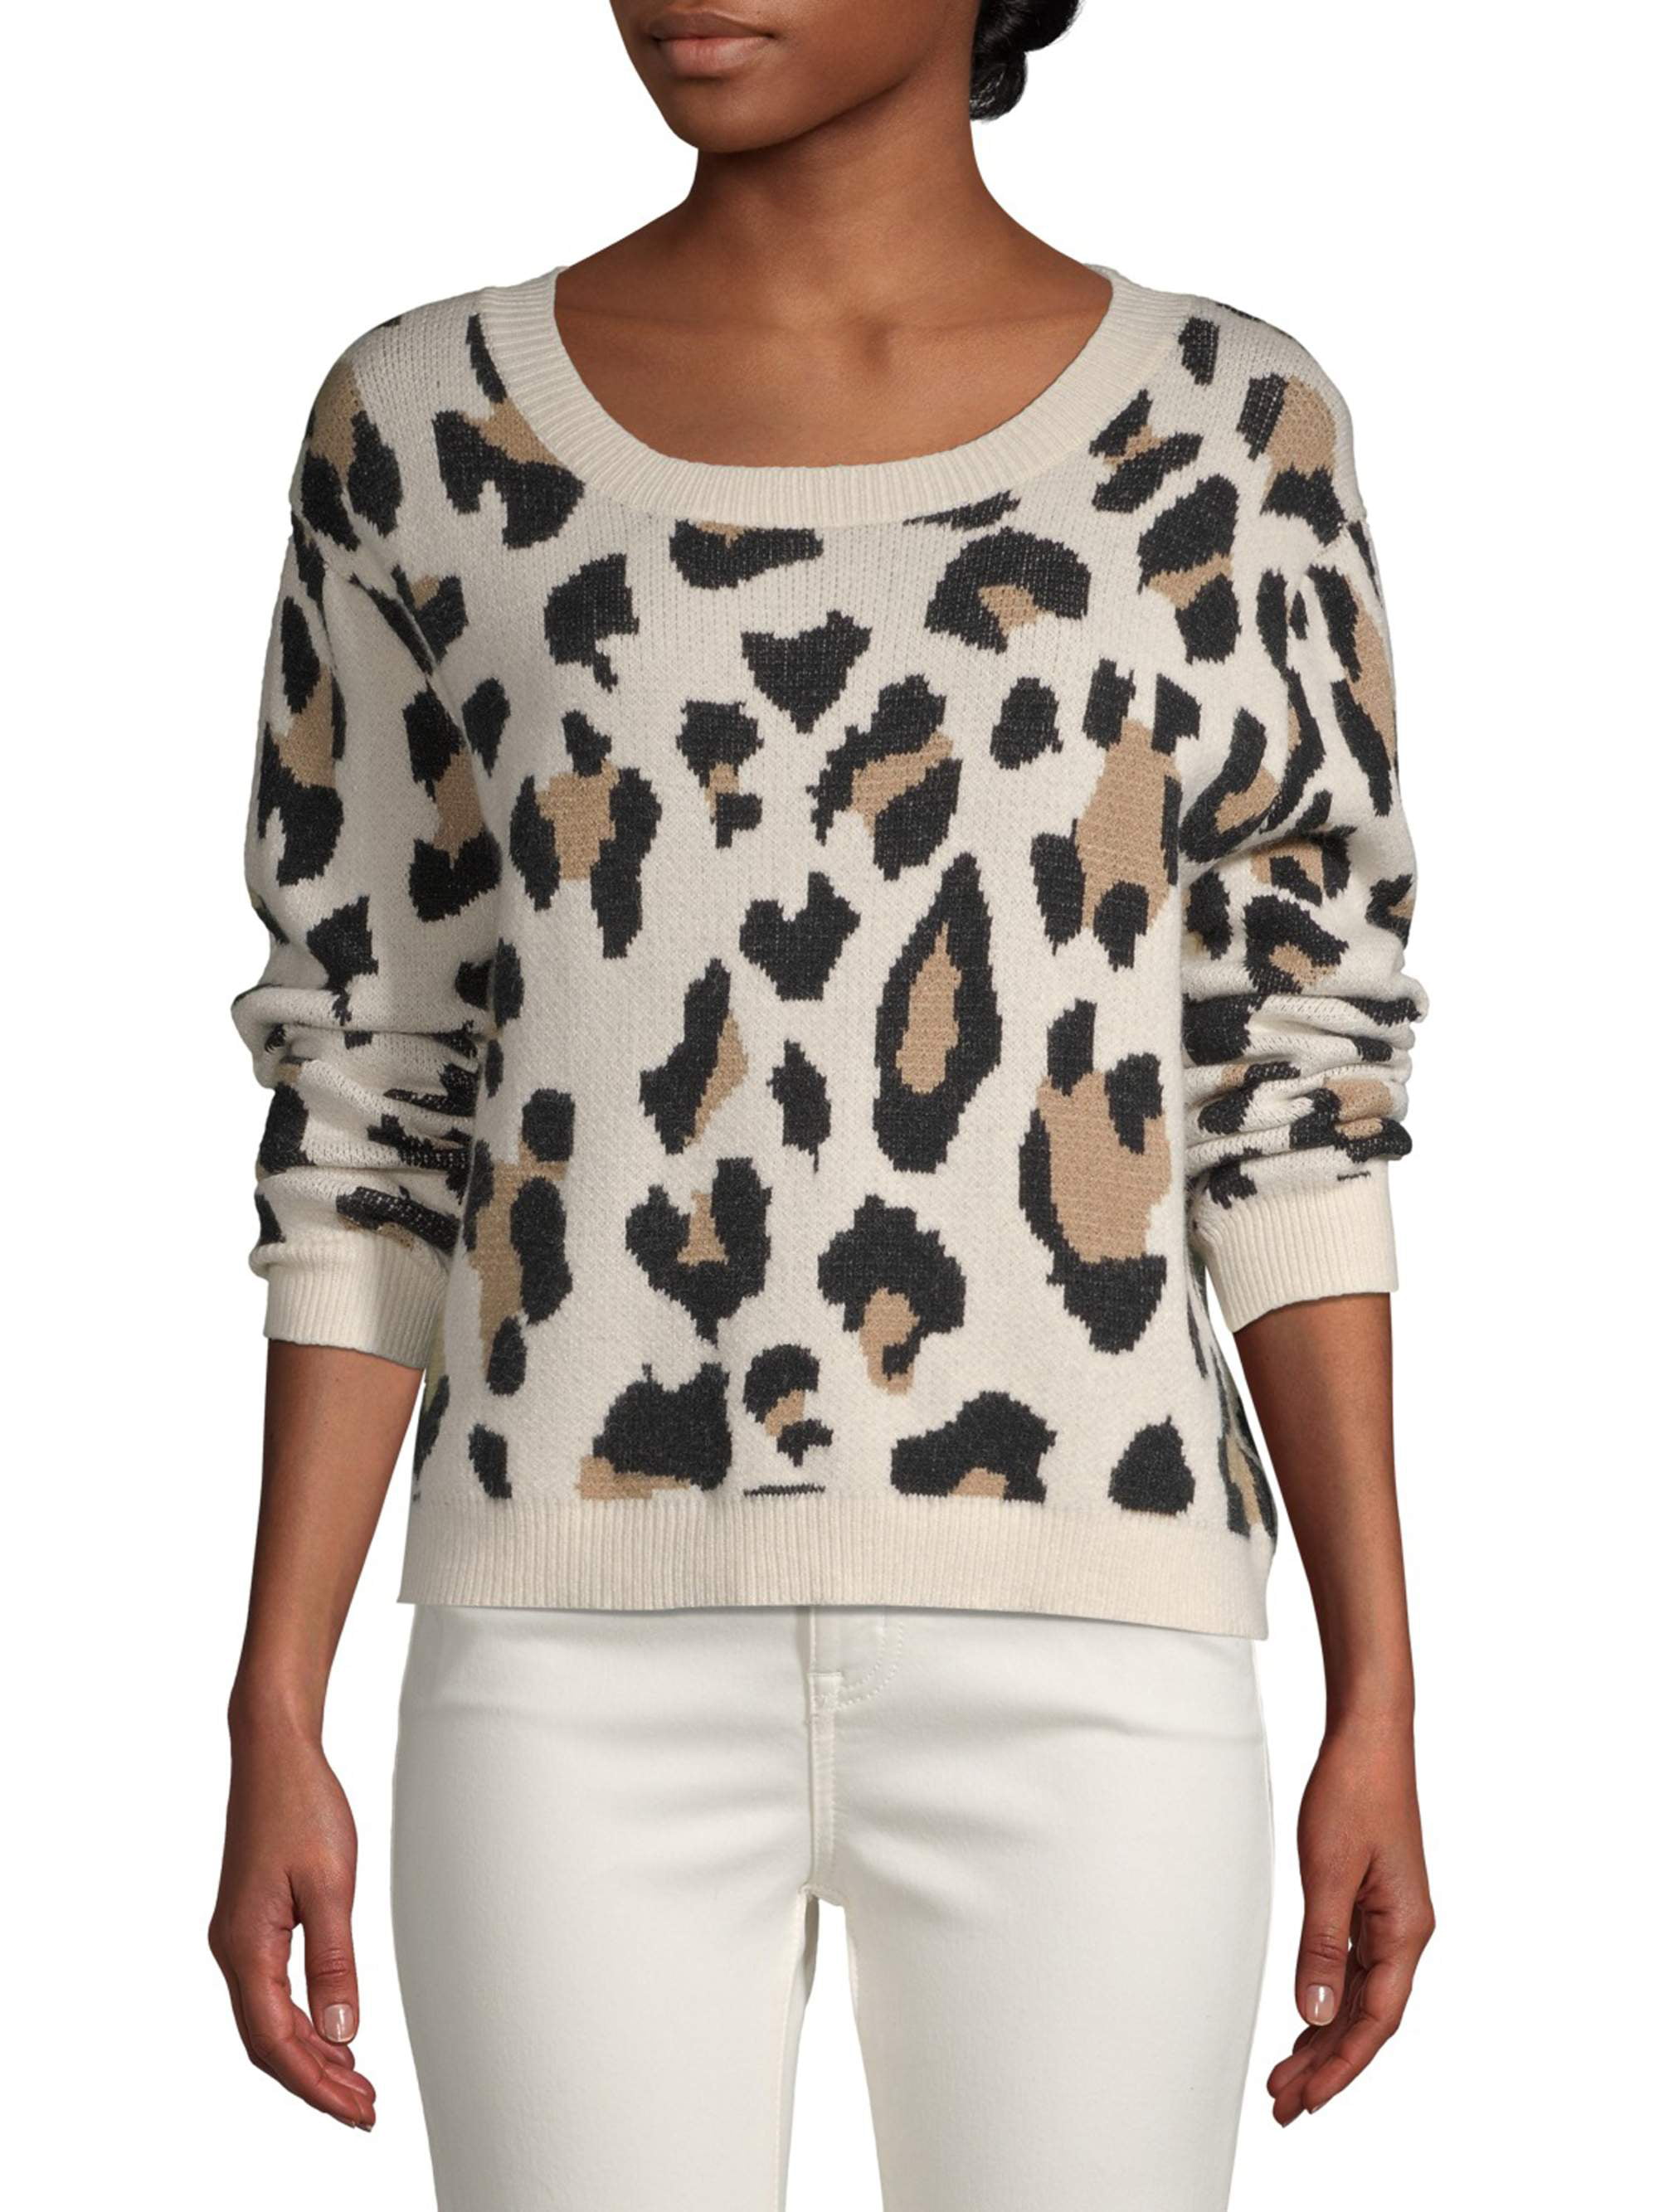 Leopard Print Sweater - Walmart.com